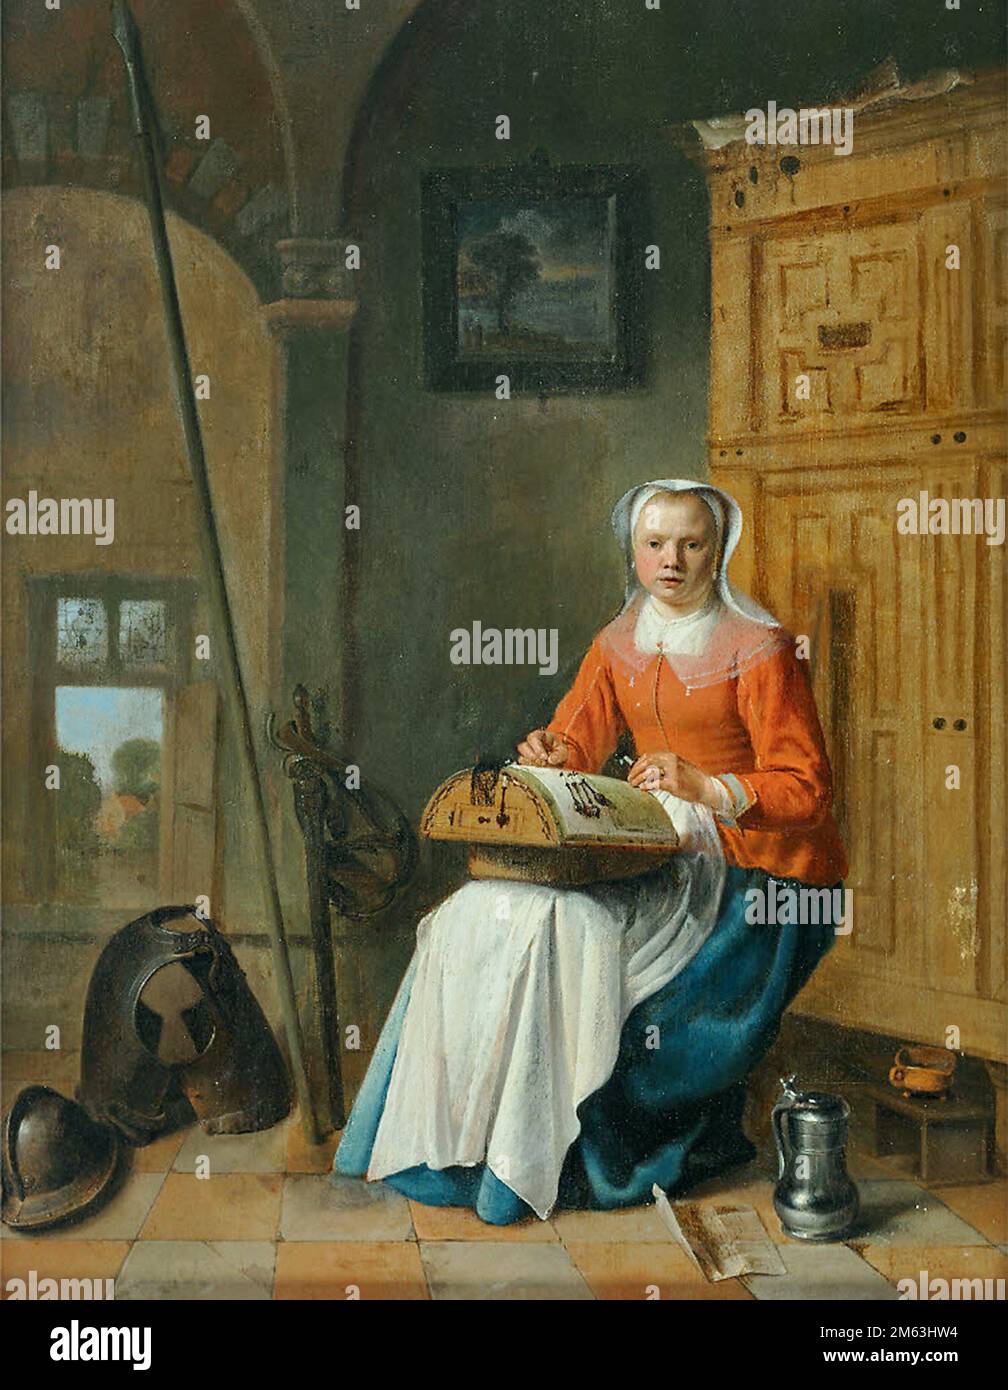 Pieter Jacobsz. Codde (niederländischer Künstler, 1599-1678). Nähen Indoors, der Schnürsenkel. Er war holländischer Maler aus dem Goldenen Zeitalter und Druckmacher. Er ist am bekanntesten Stockfoto